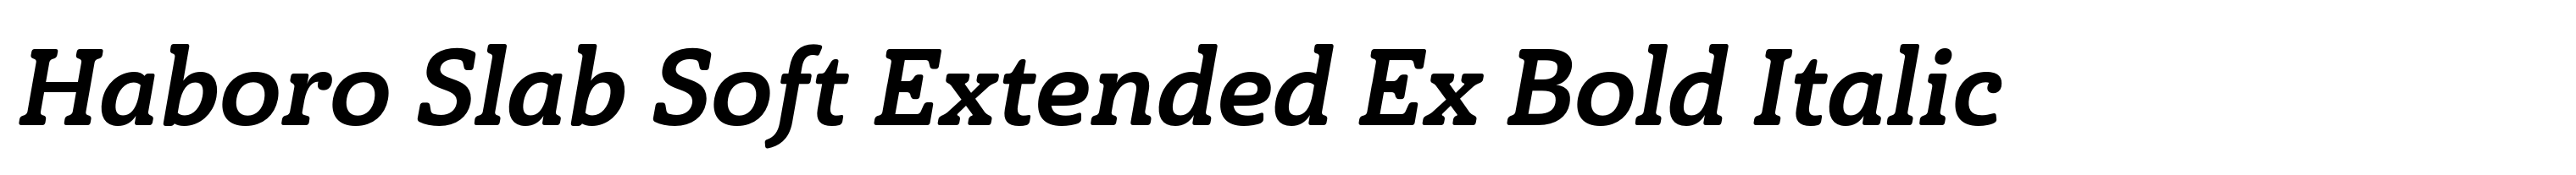 Haboro Slab Soft Extended Ex Bold Italic